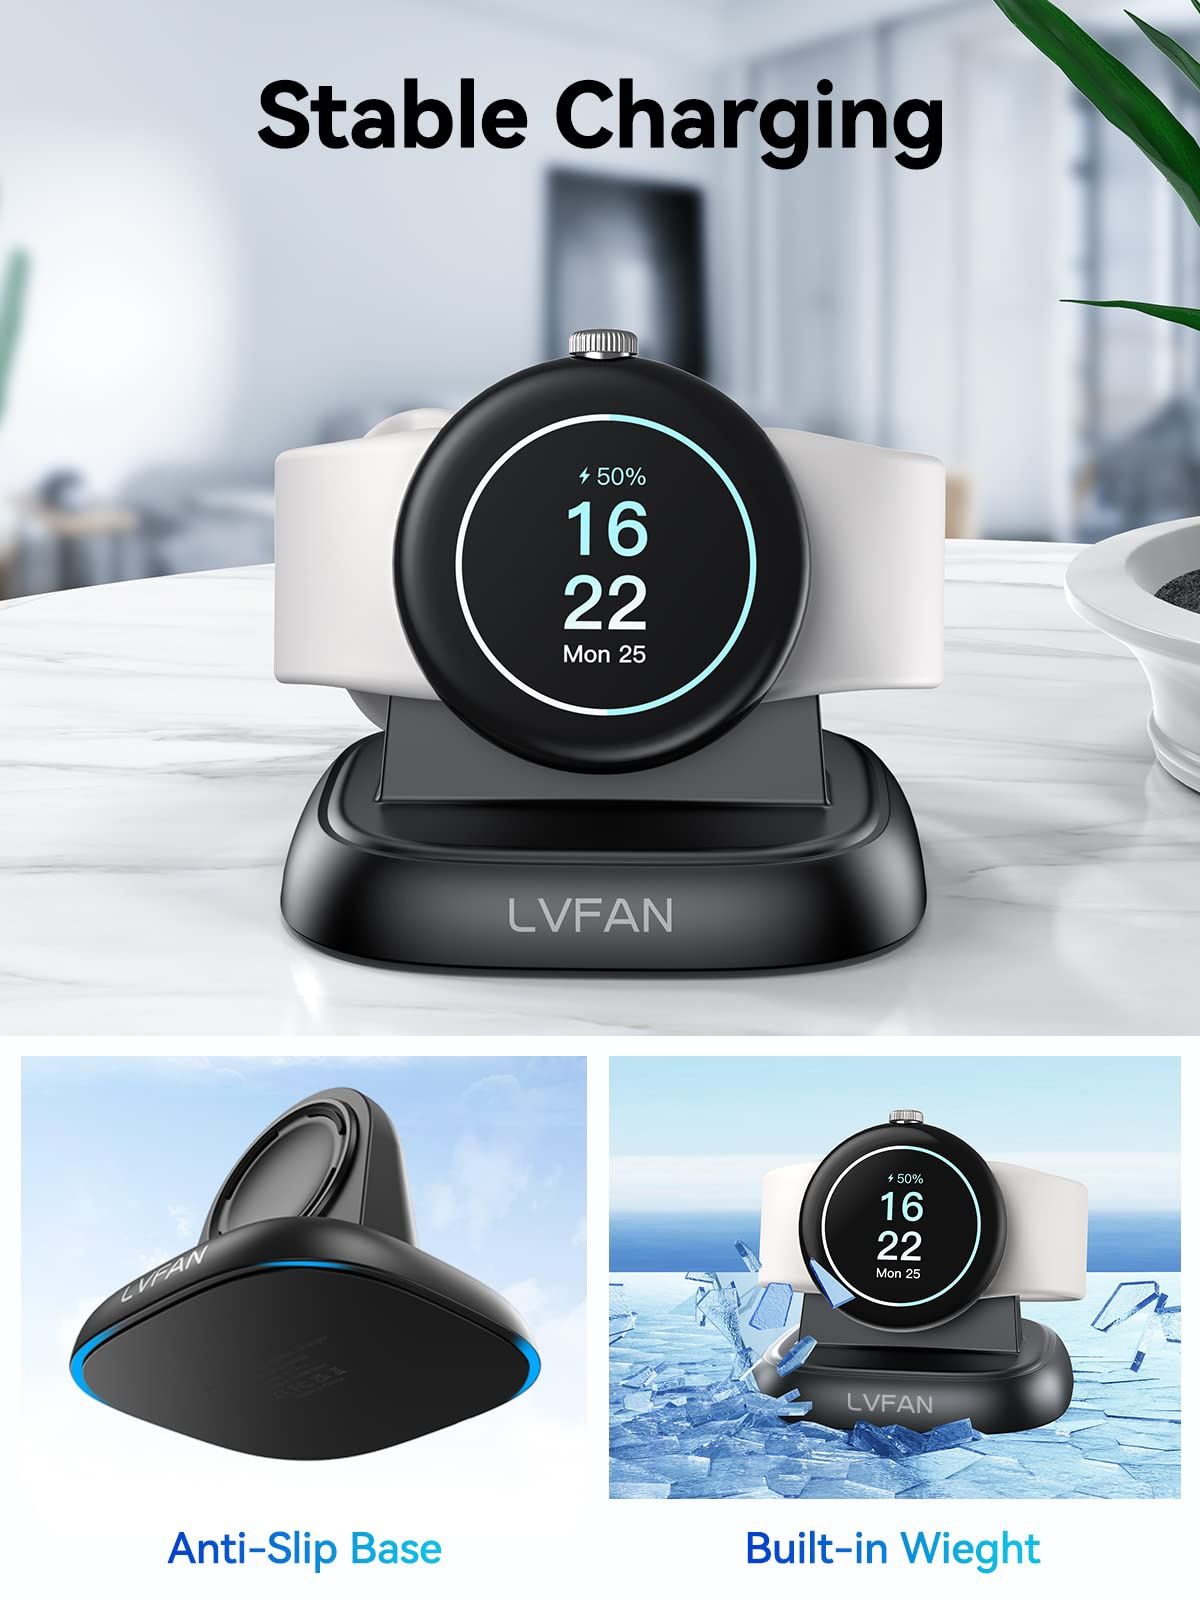 Зарядний пристрій LVFAN для Google Pixel Watch